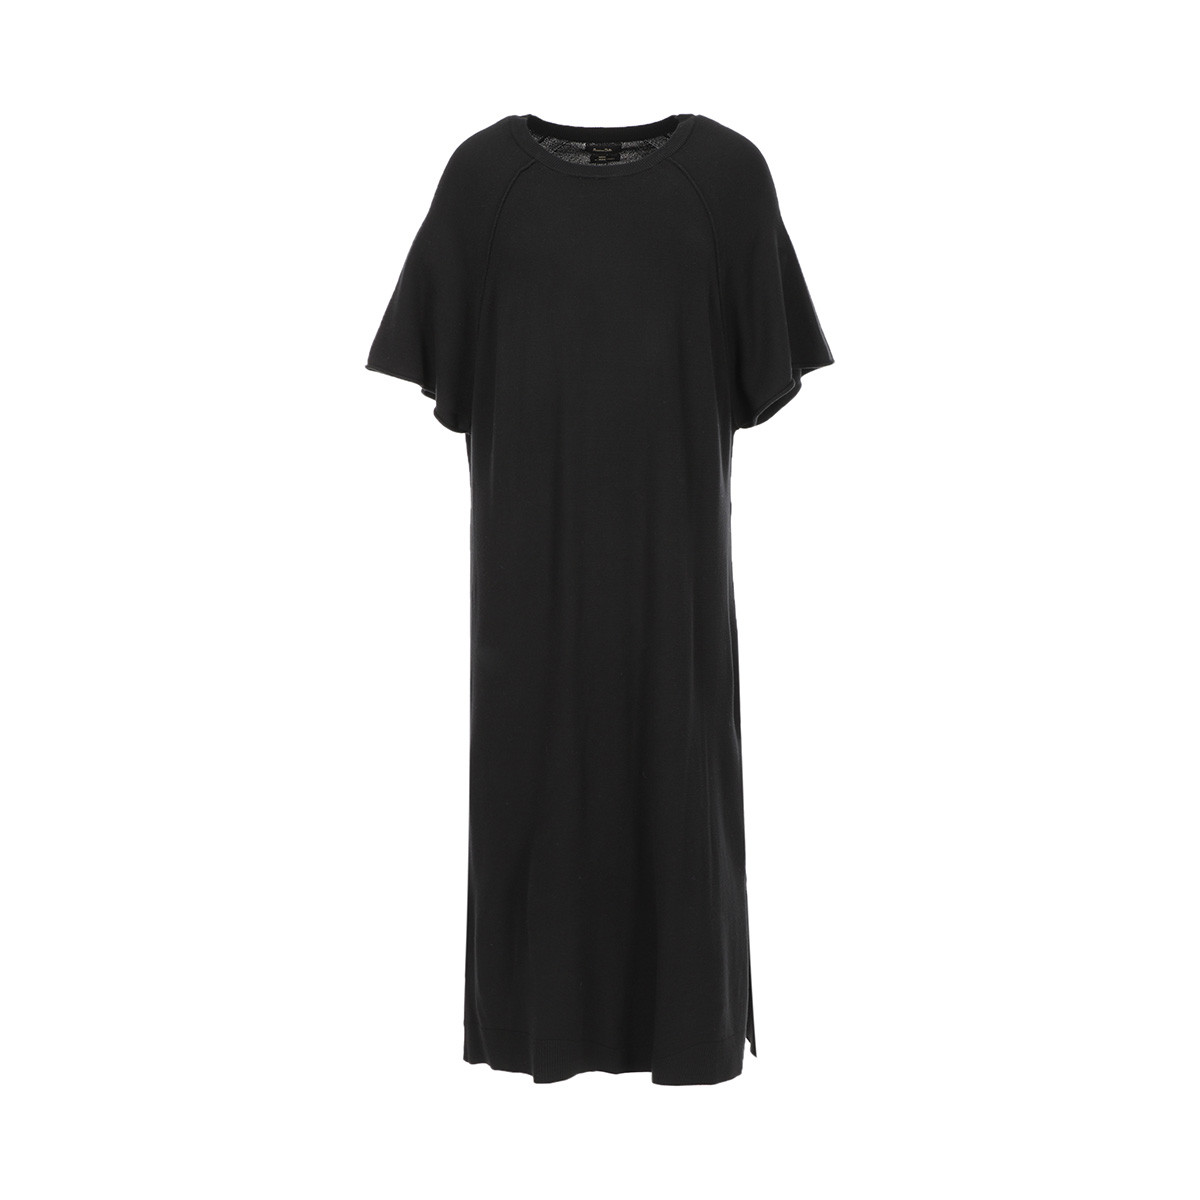 Massimo Dutti 女士休闲优雅复古纯色短袖连衣裙